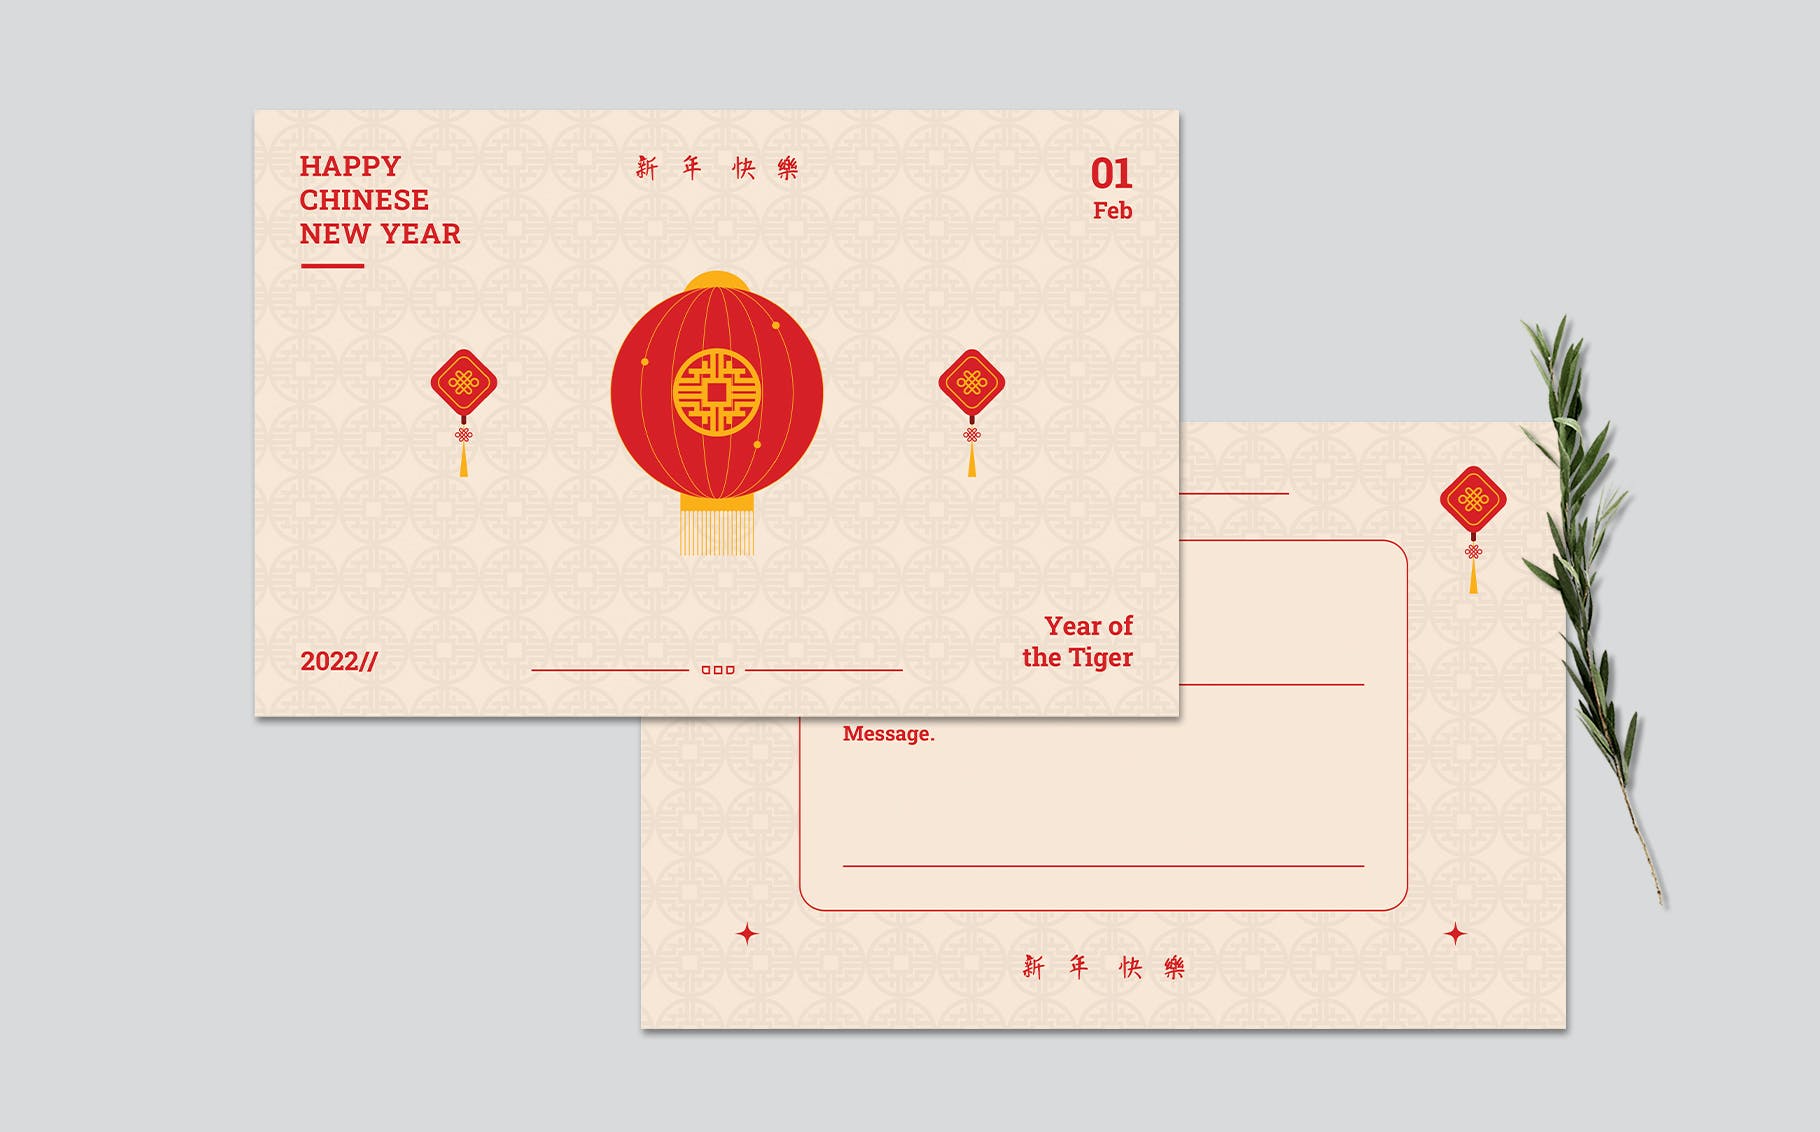 农历新年贺卡设计模板 Chinese New Year Greeting Card 设计素材 第2张